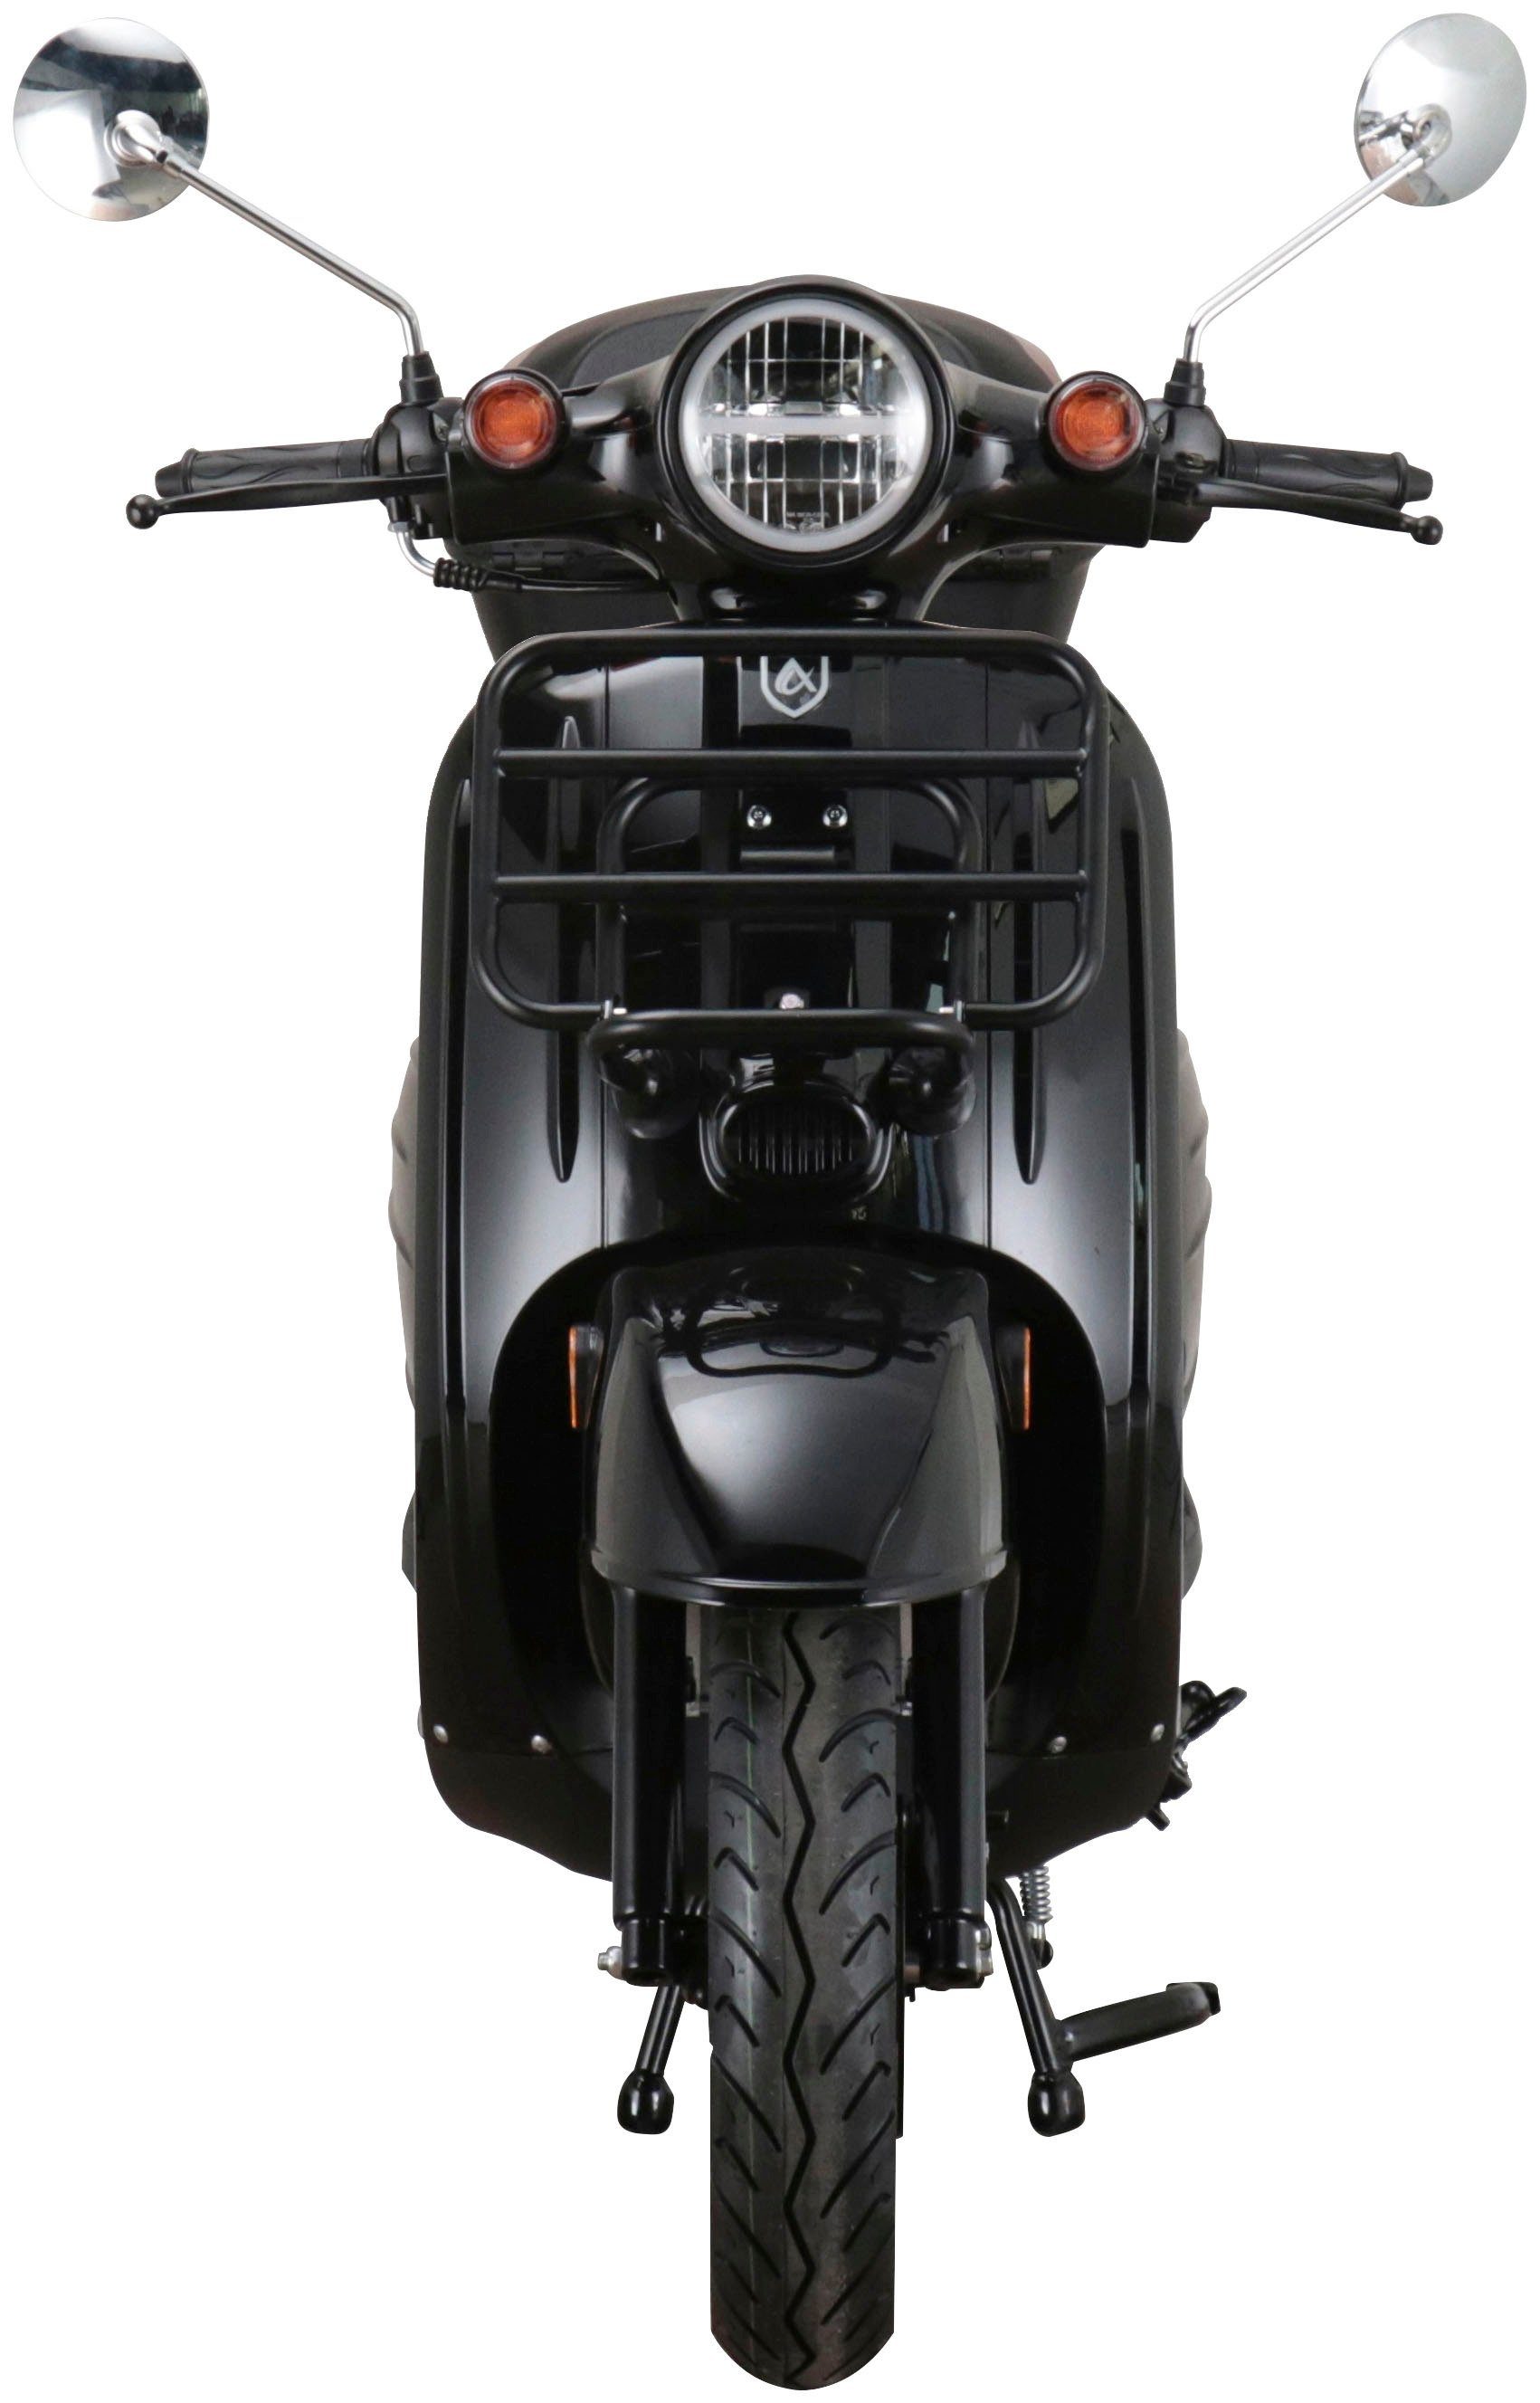 Motorroller schwarz 5, mit Alpha ccm, Adria, Motors 50 km/h, 45 Euro (Set, Topcase)